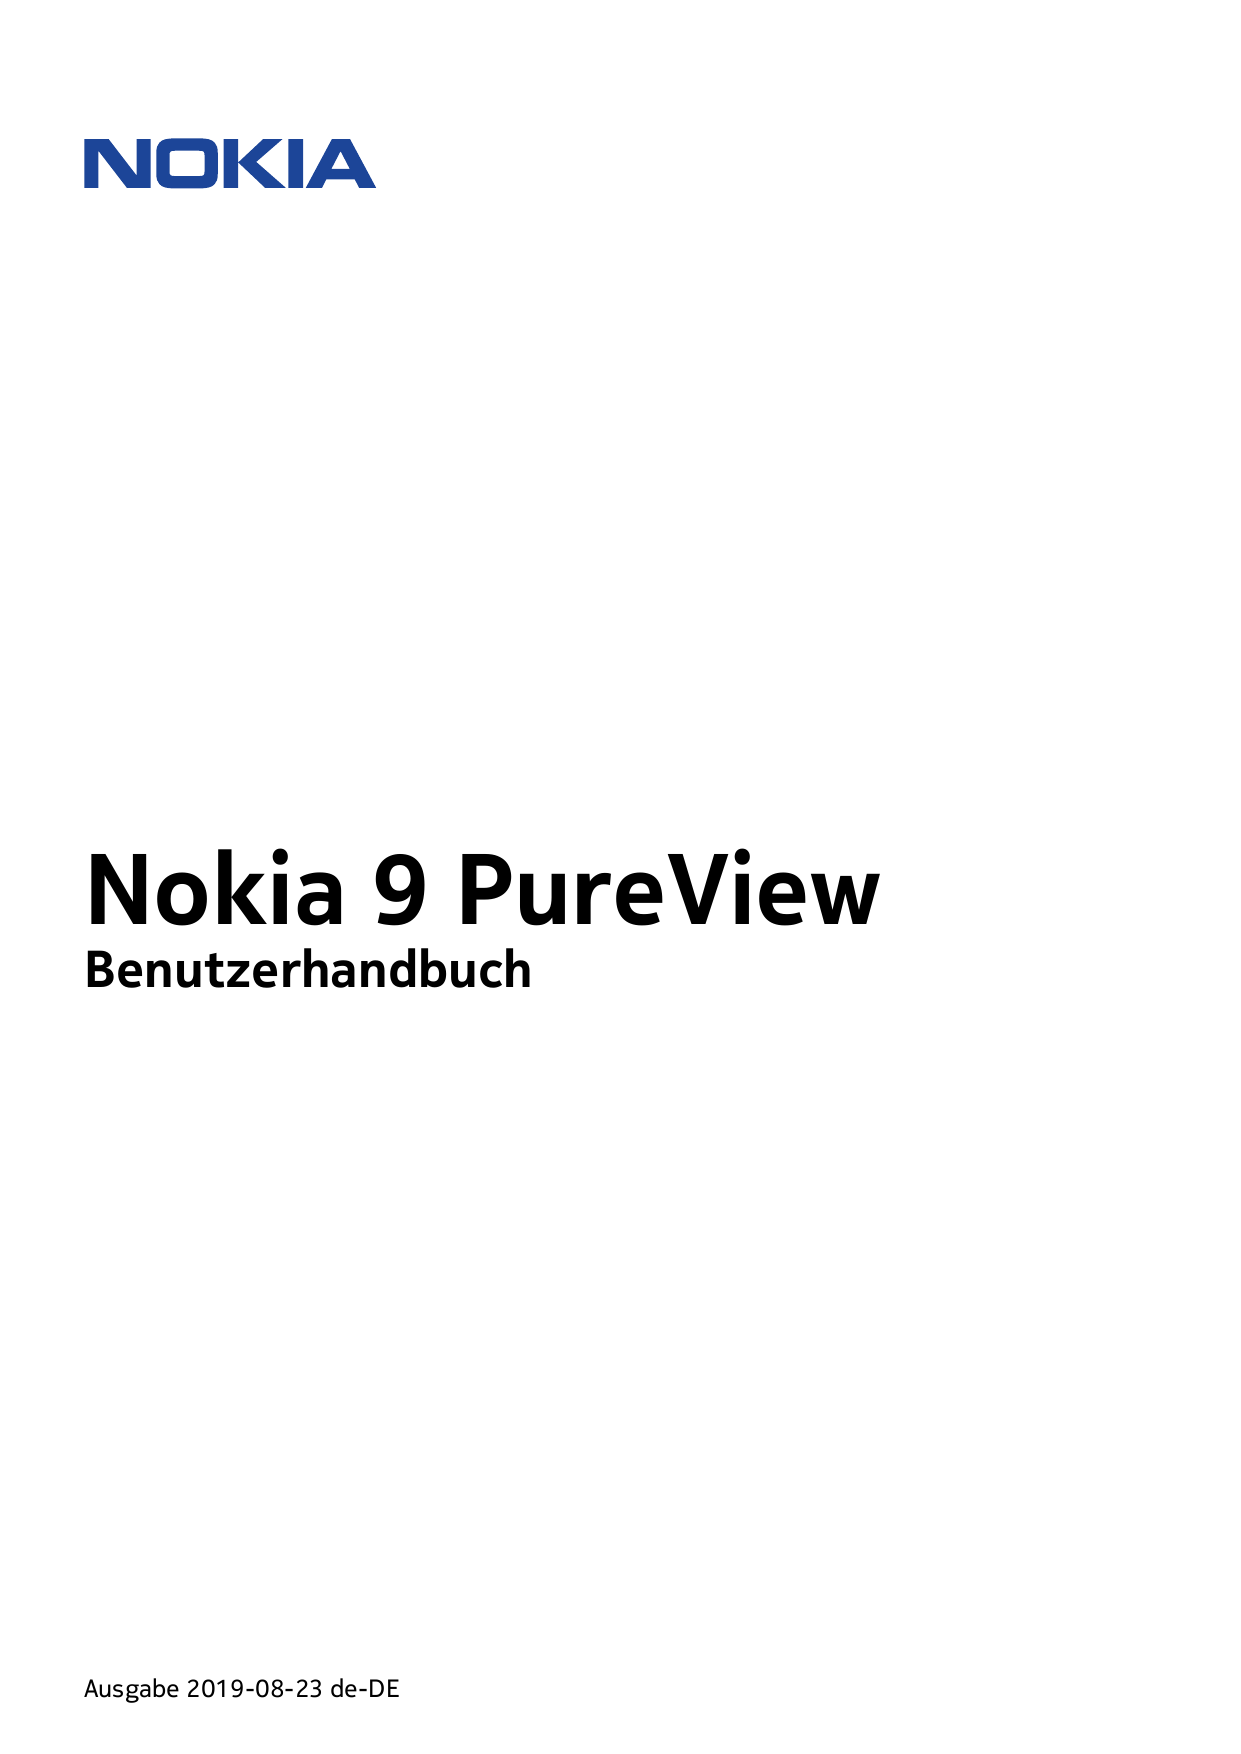 Nokia 9 PureViewBenutzerhandbuchAusgabe 2019-08-23 de-DE